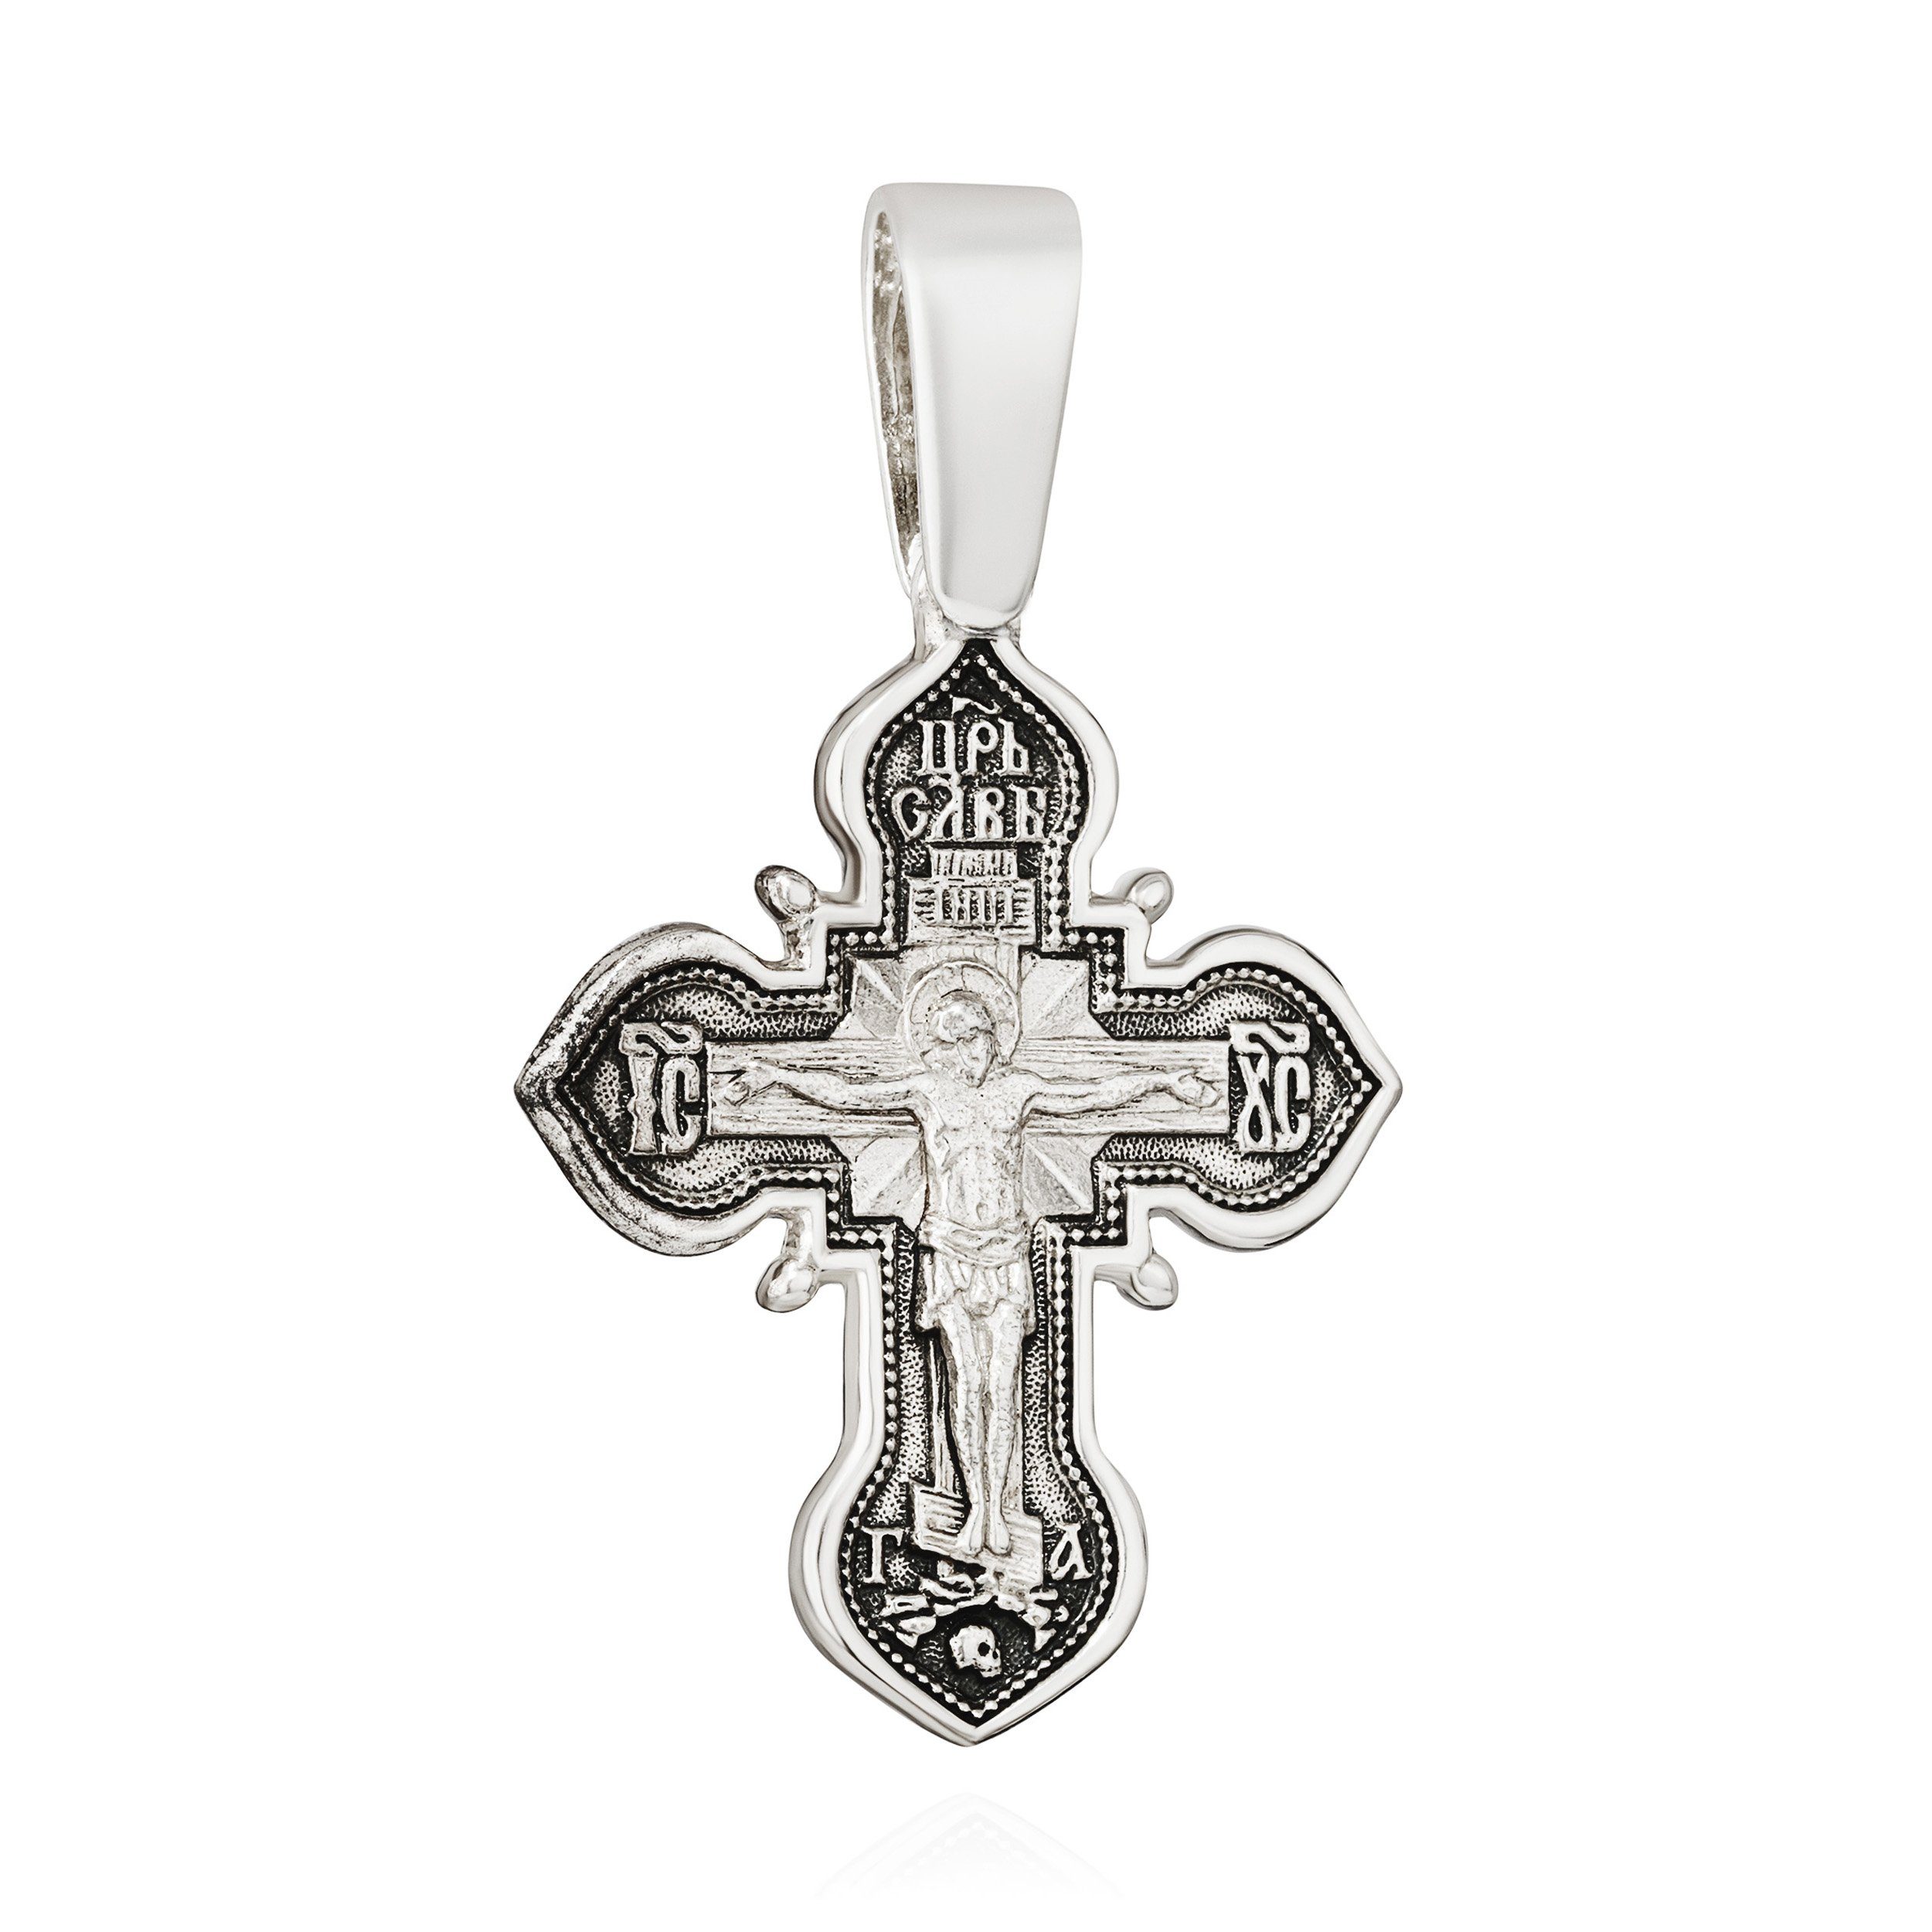 NKlaus Kettenanhänger Kettenanhänger Kreuz 925 Silber 34,6mm x 30mm Maria mit Jesuskind Kett